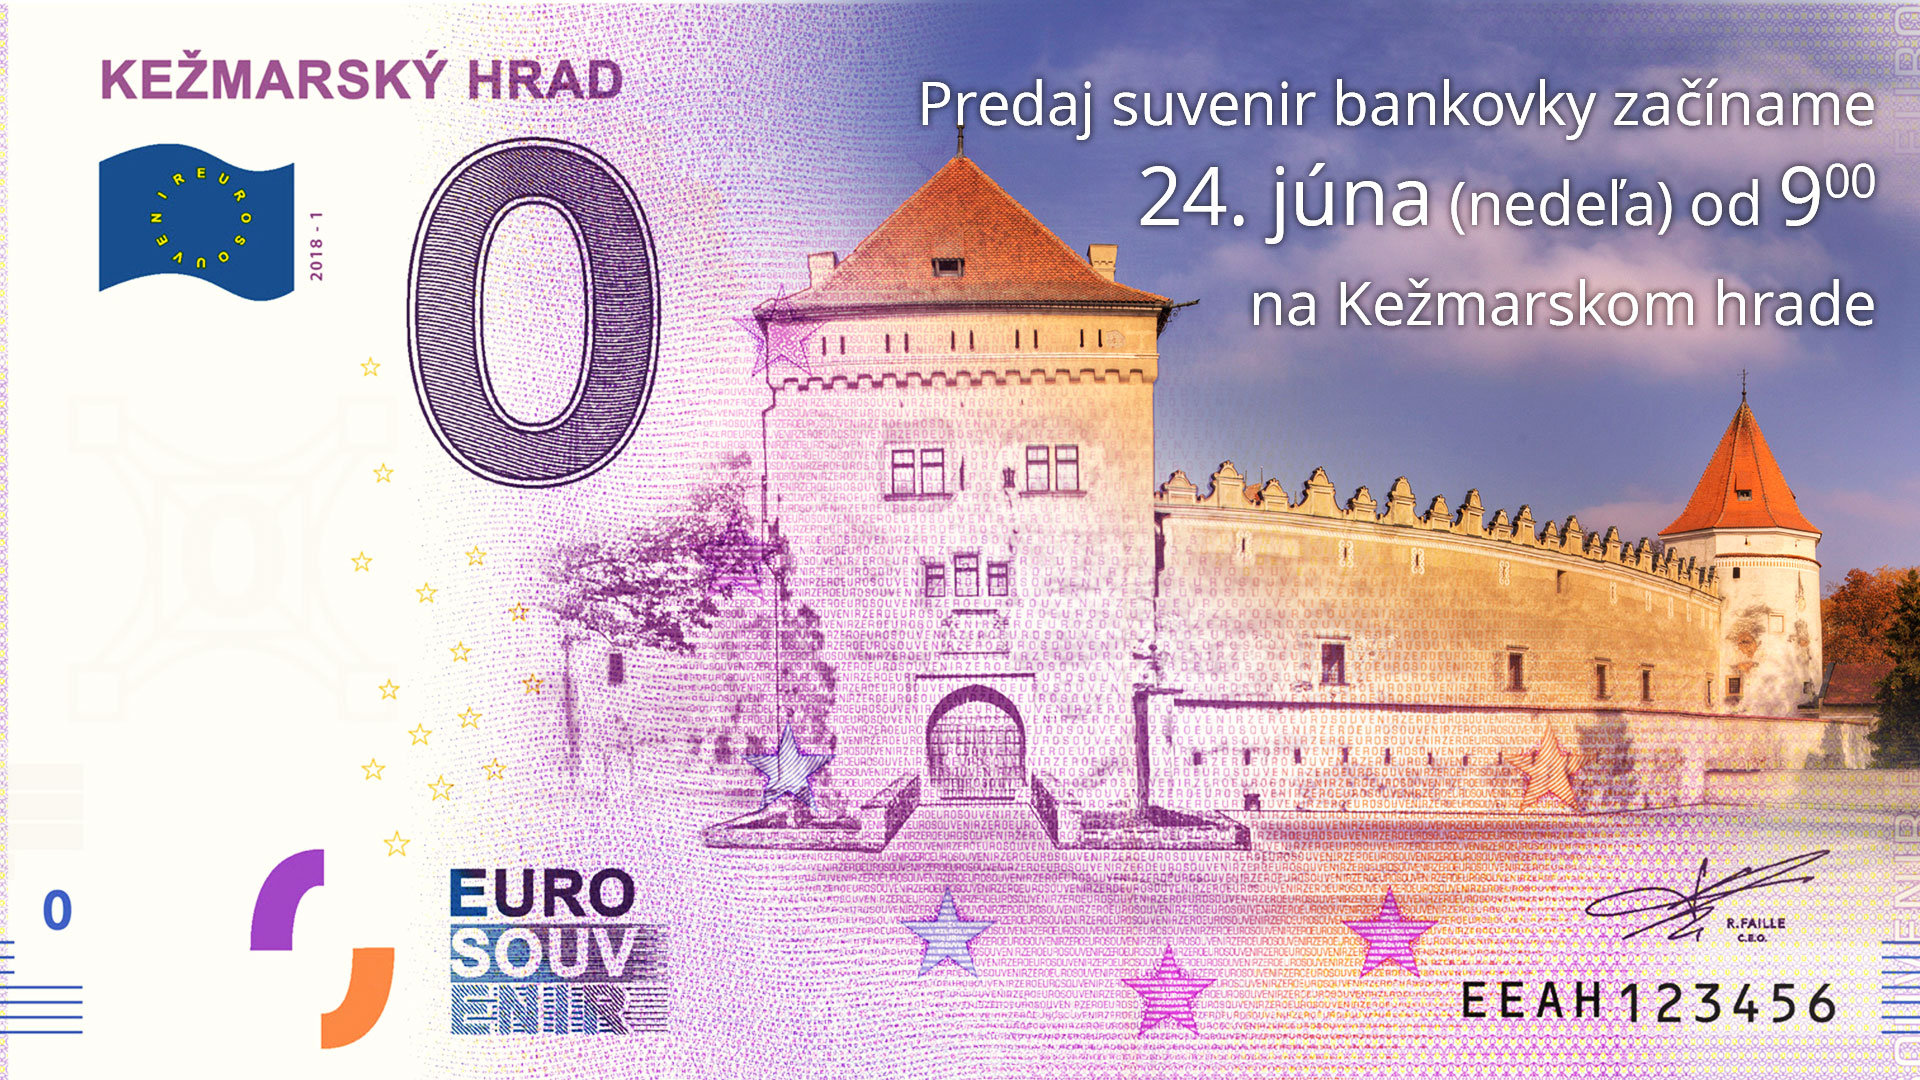 Video reportáž zo začiatku predaja souvenir eurobankovky Kežmarského hradu.